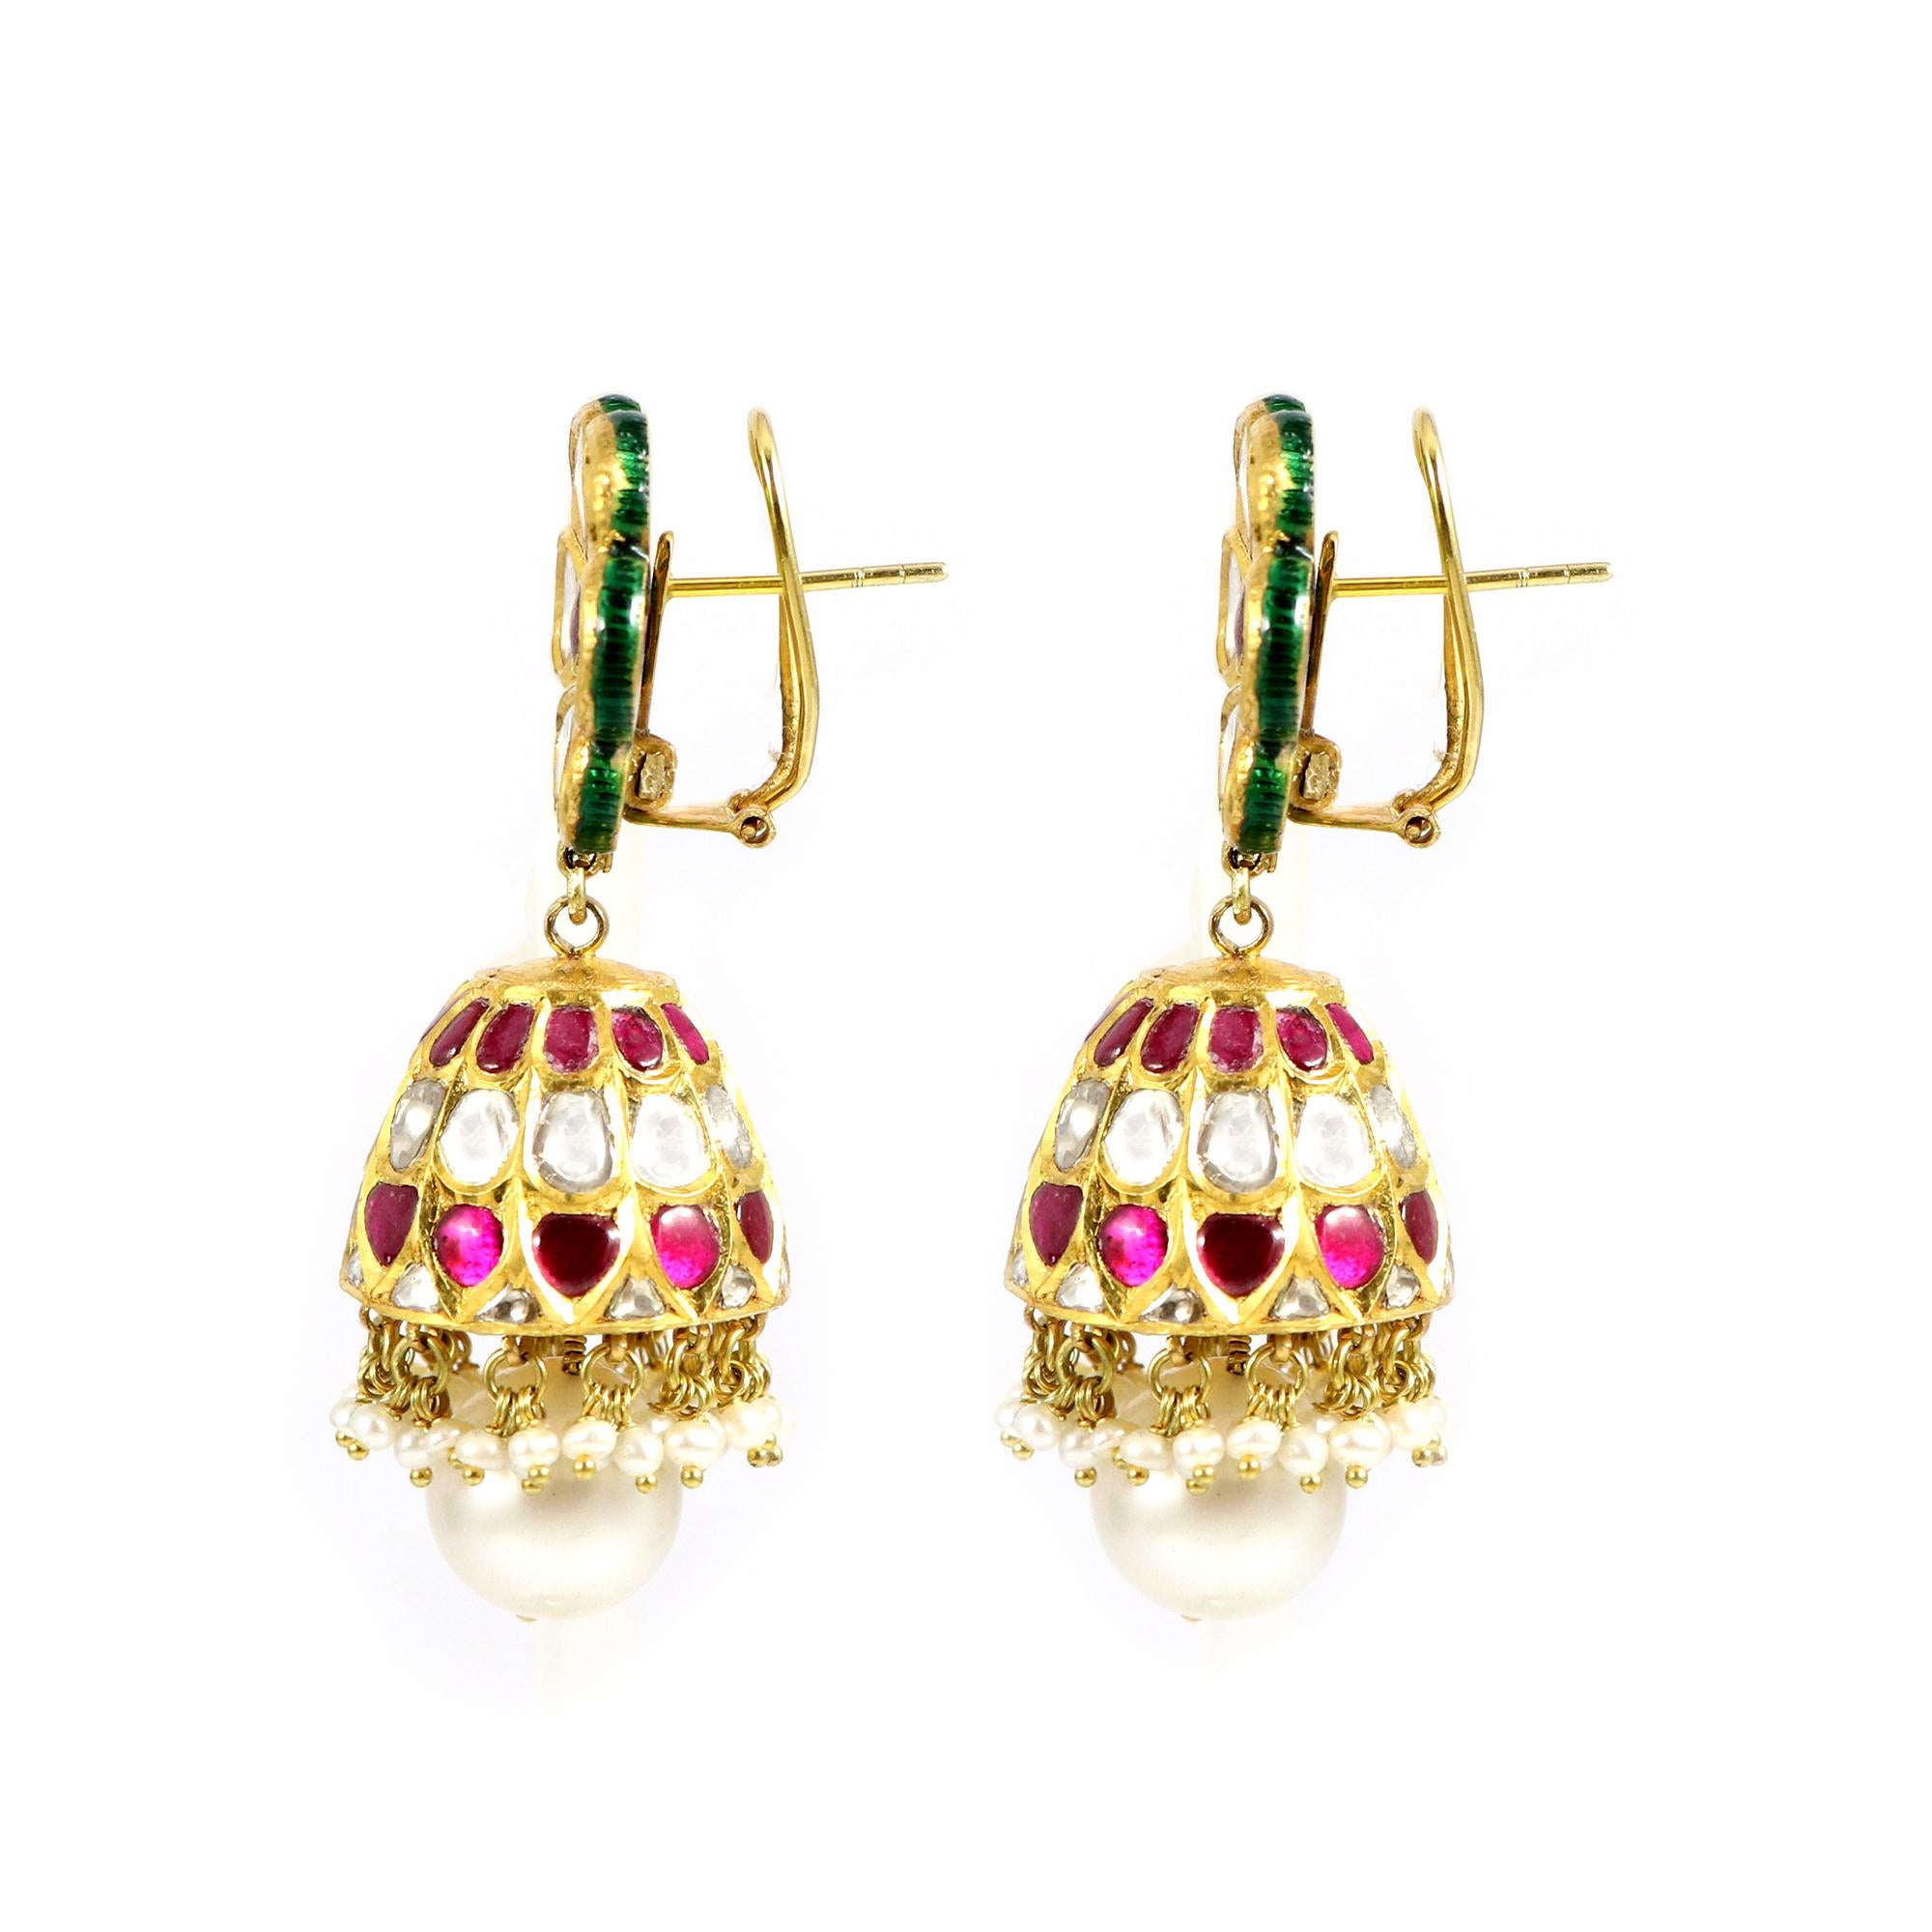 Erleben Sie dauerhafte Eleganz mit unseren blumenförmigen Rubin- und Polki Jhumki-Ohrringen. Diese atemberaubenden Schmuckstücke sind mit Präzision gefertigt und zeichnen sich durch leuchtende Rubine und funkelnde Polki-Steine aus, die in einem